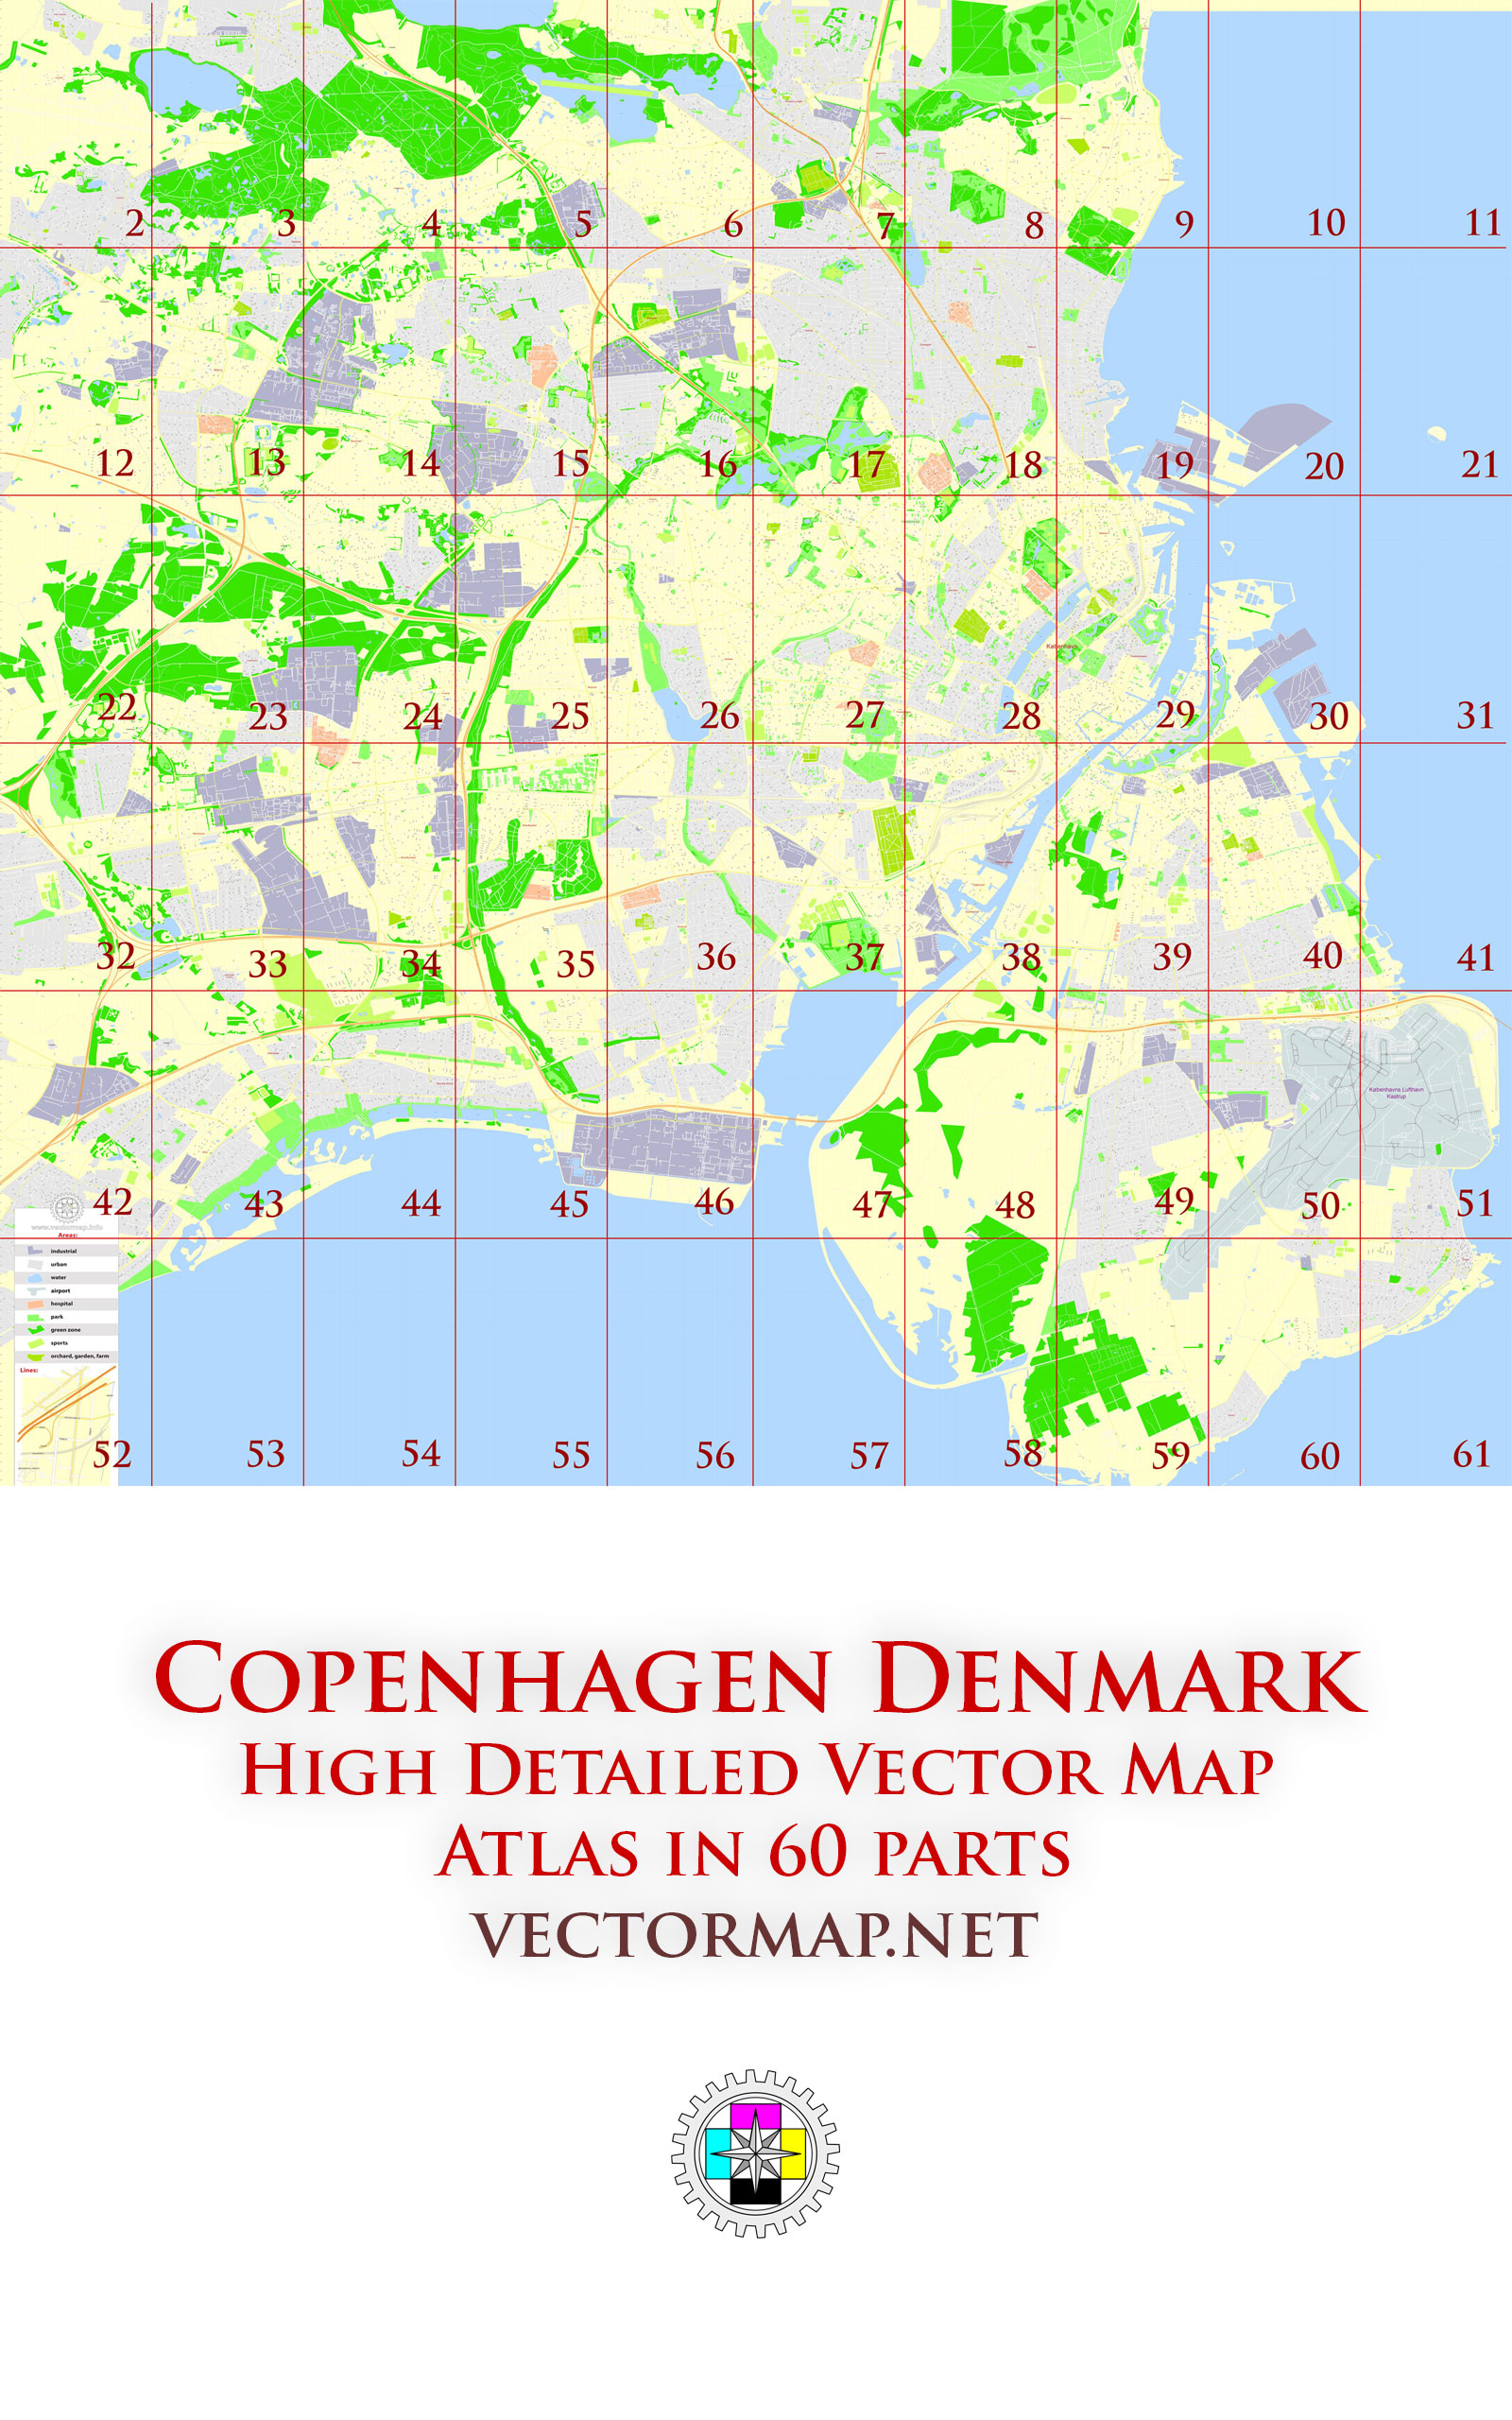 Copenhagen Denmark Tourist Map multi-page atlas, contains 60 pages vector PDF